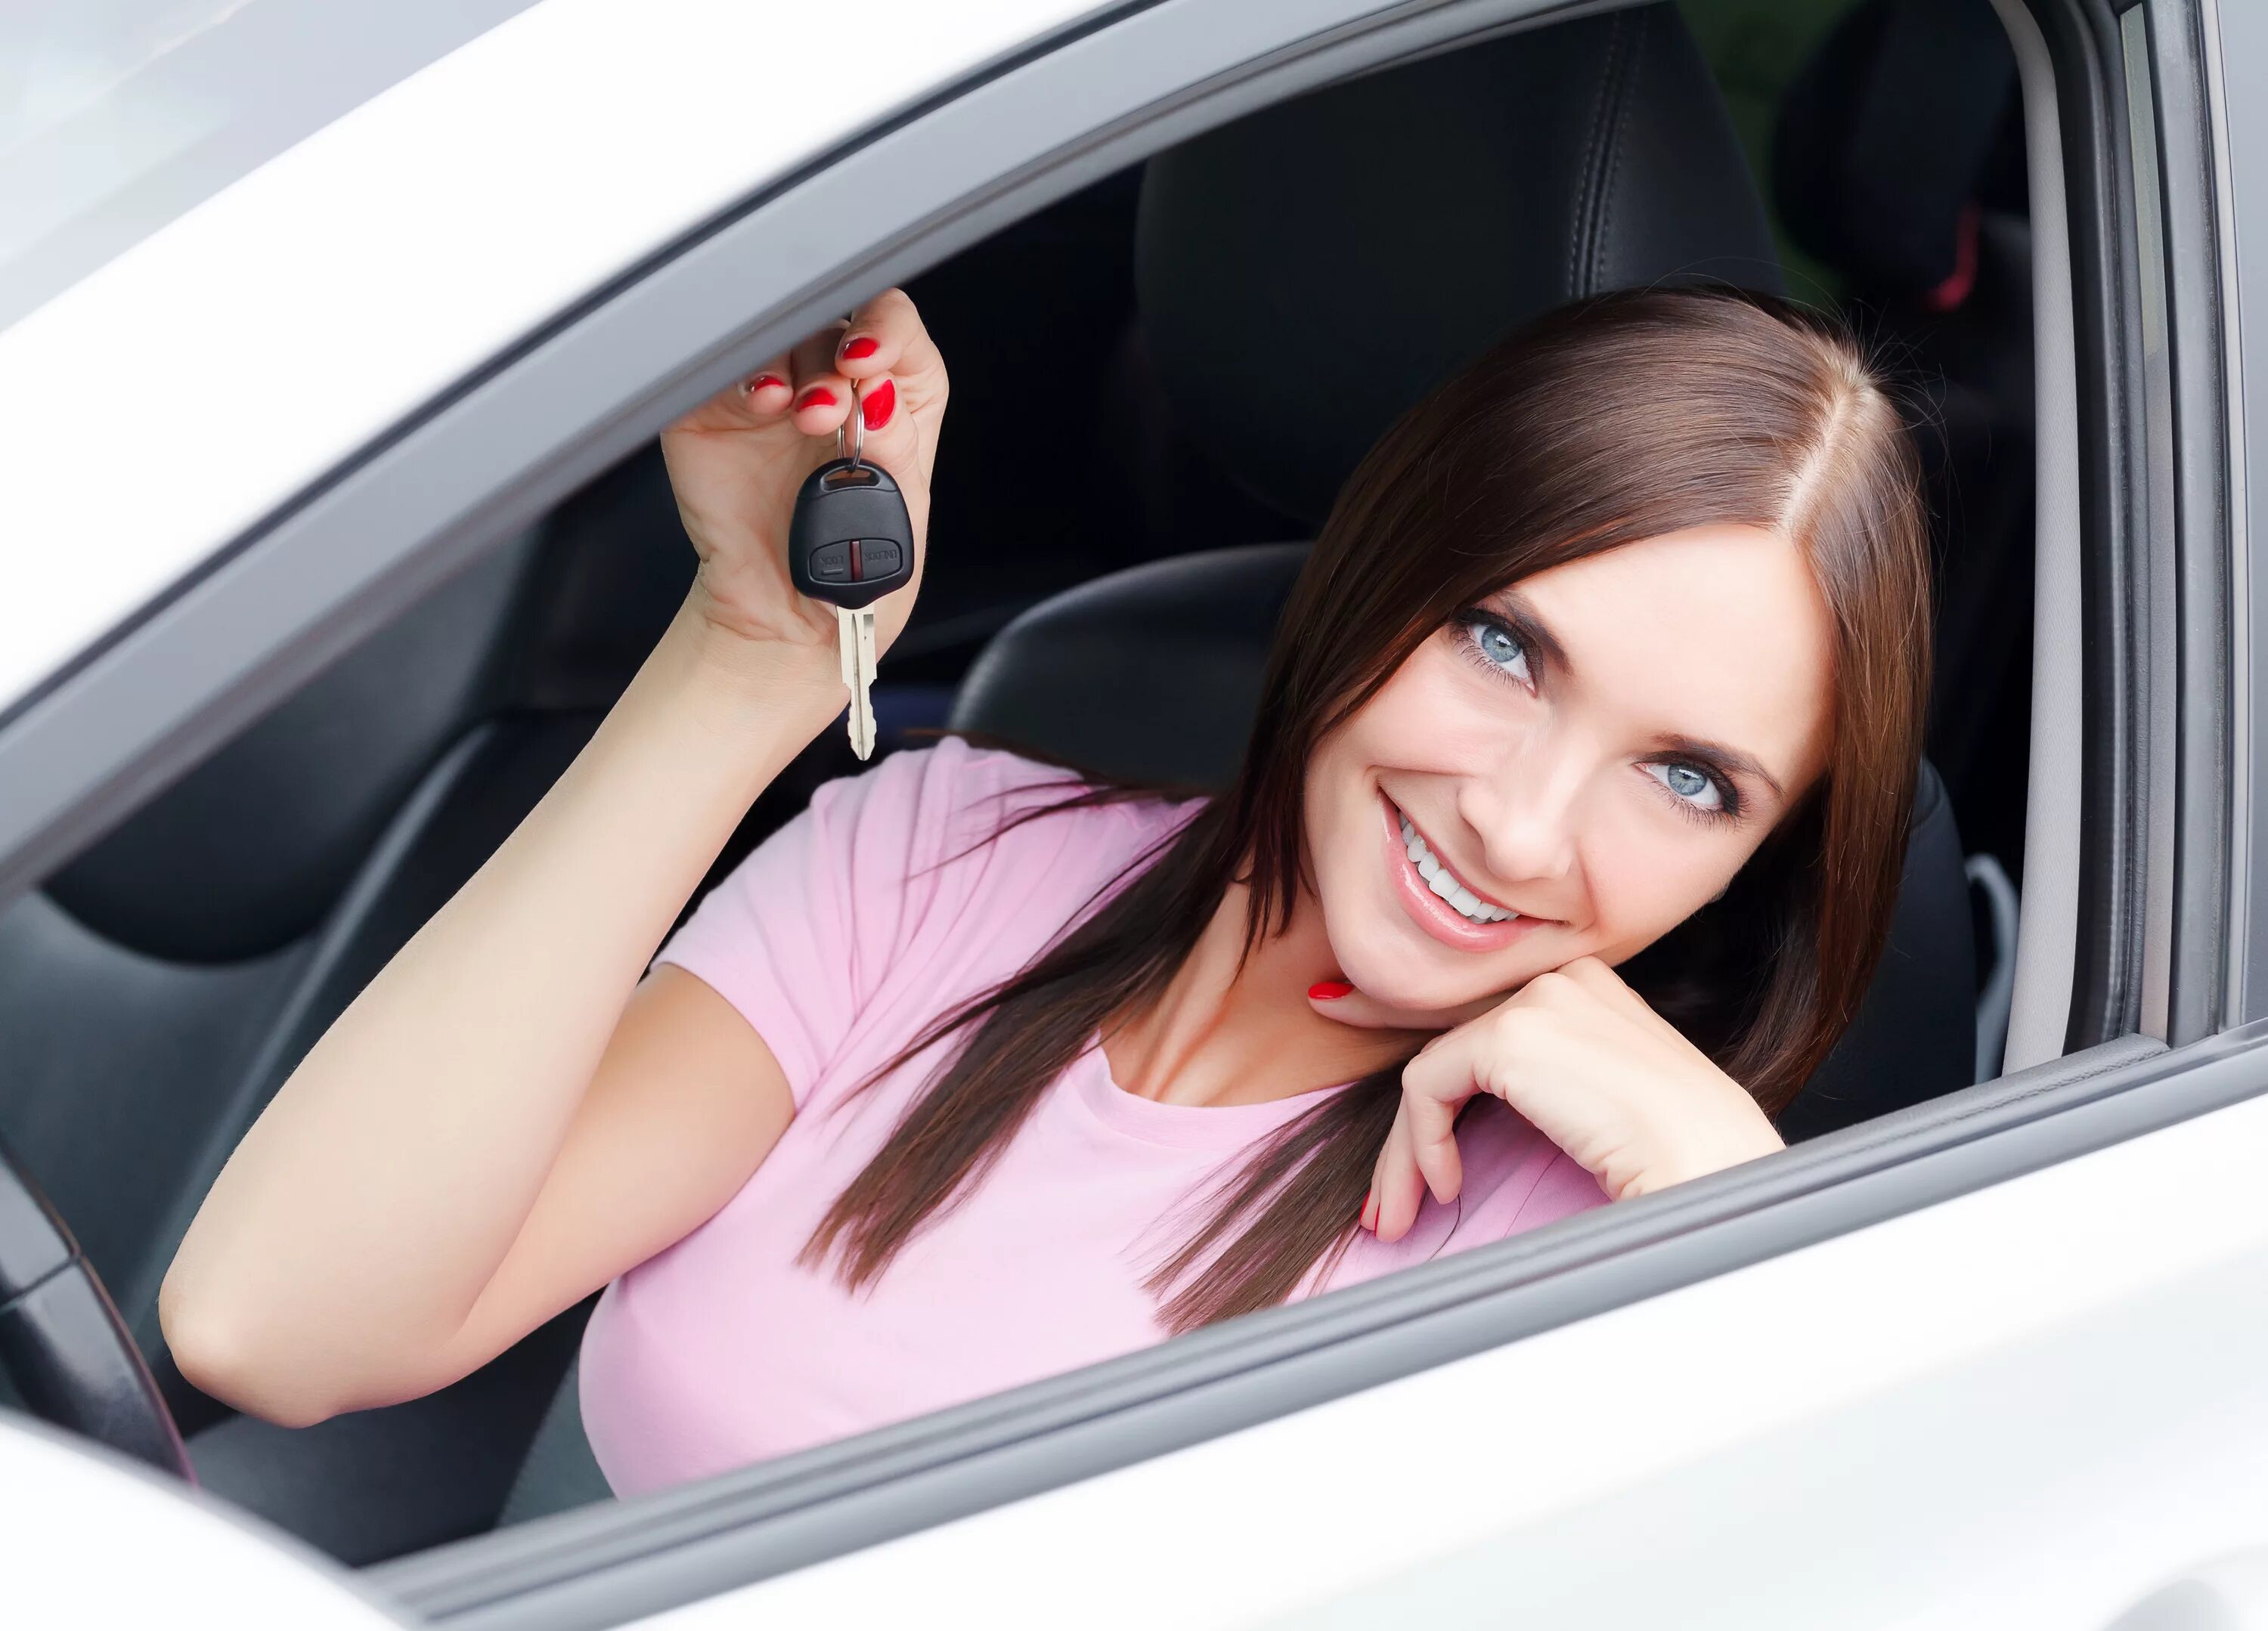 Машинка показывает ue. Девушка в машине улыбается. Девушка окне авто. Девушка в окне автомобиля. Девушка показывает машины.